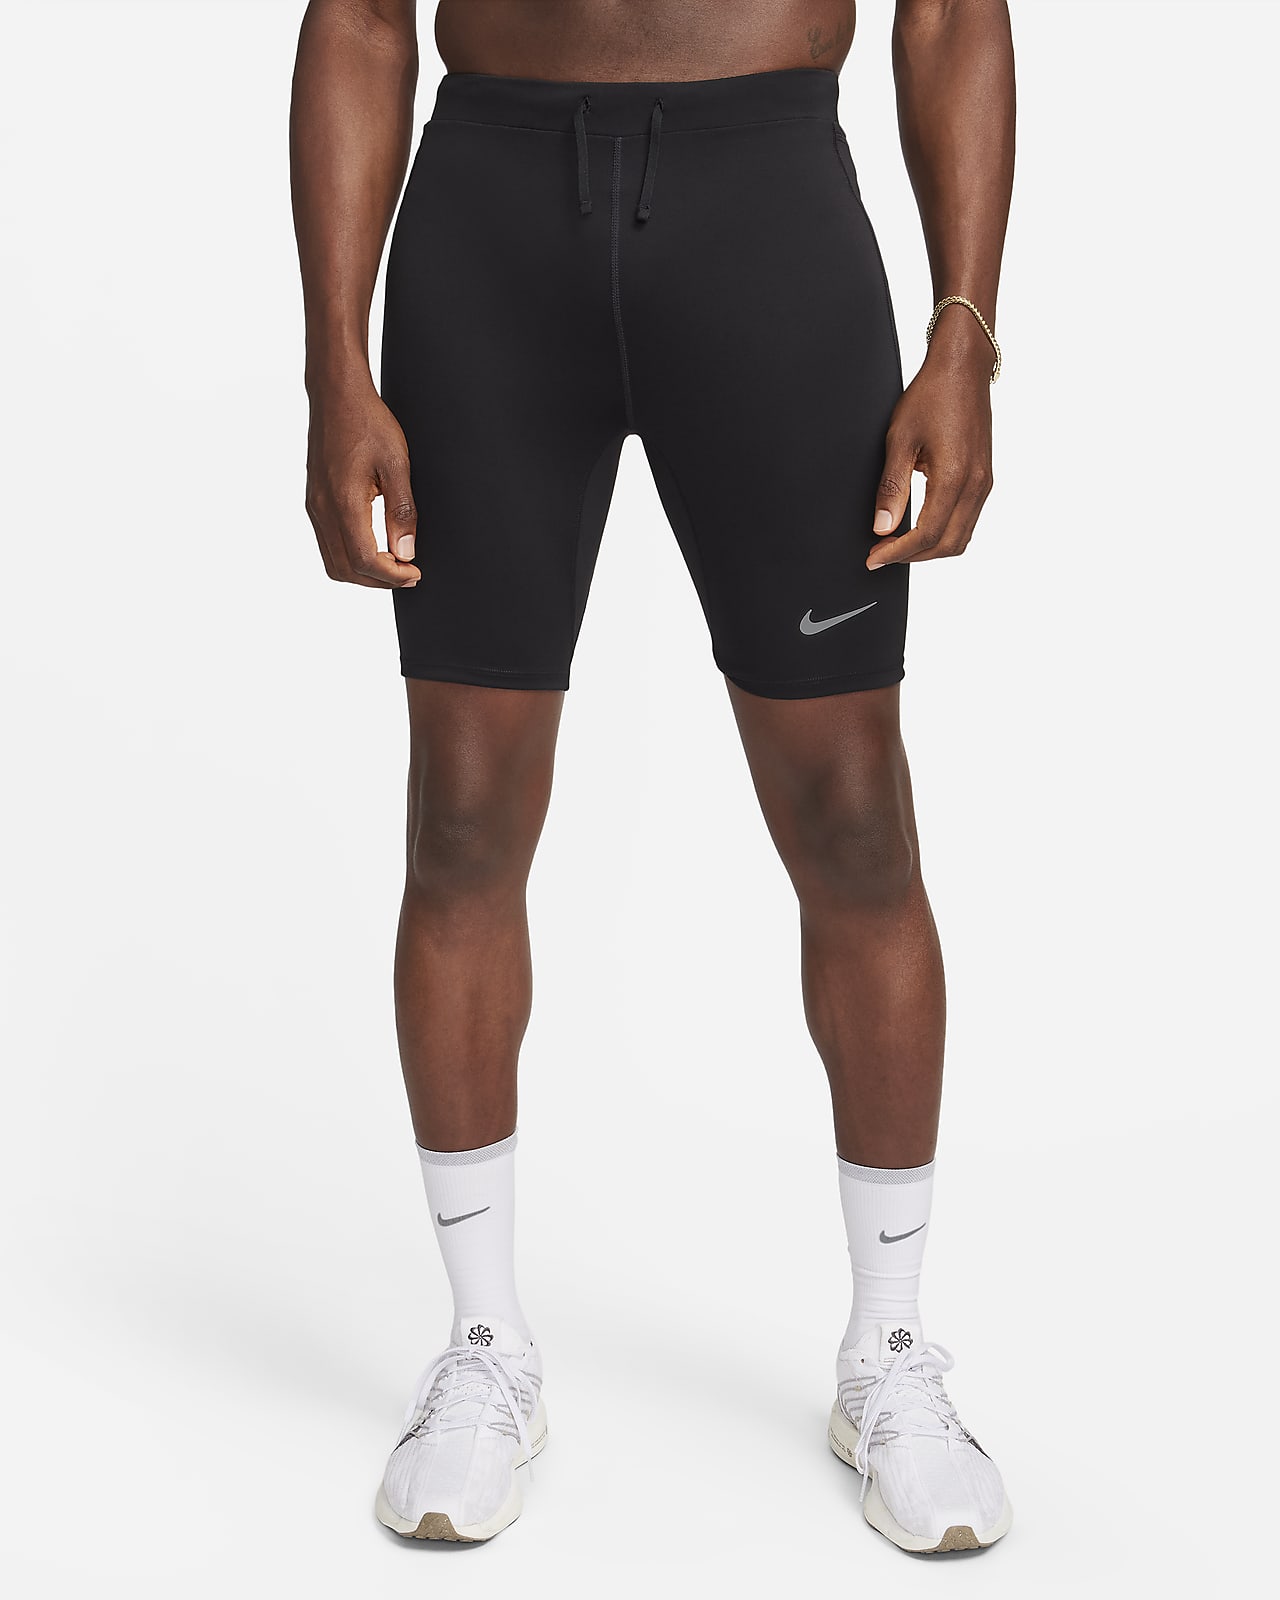 Nike Dri-FIT Fast MR Tights női futónadrág - Spuri Futóbolt